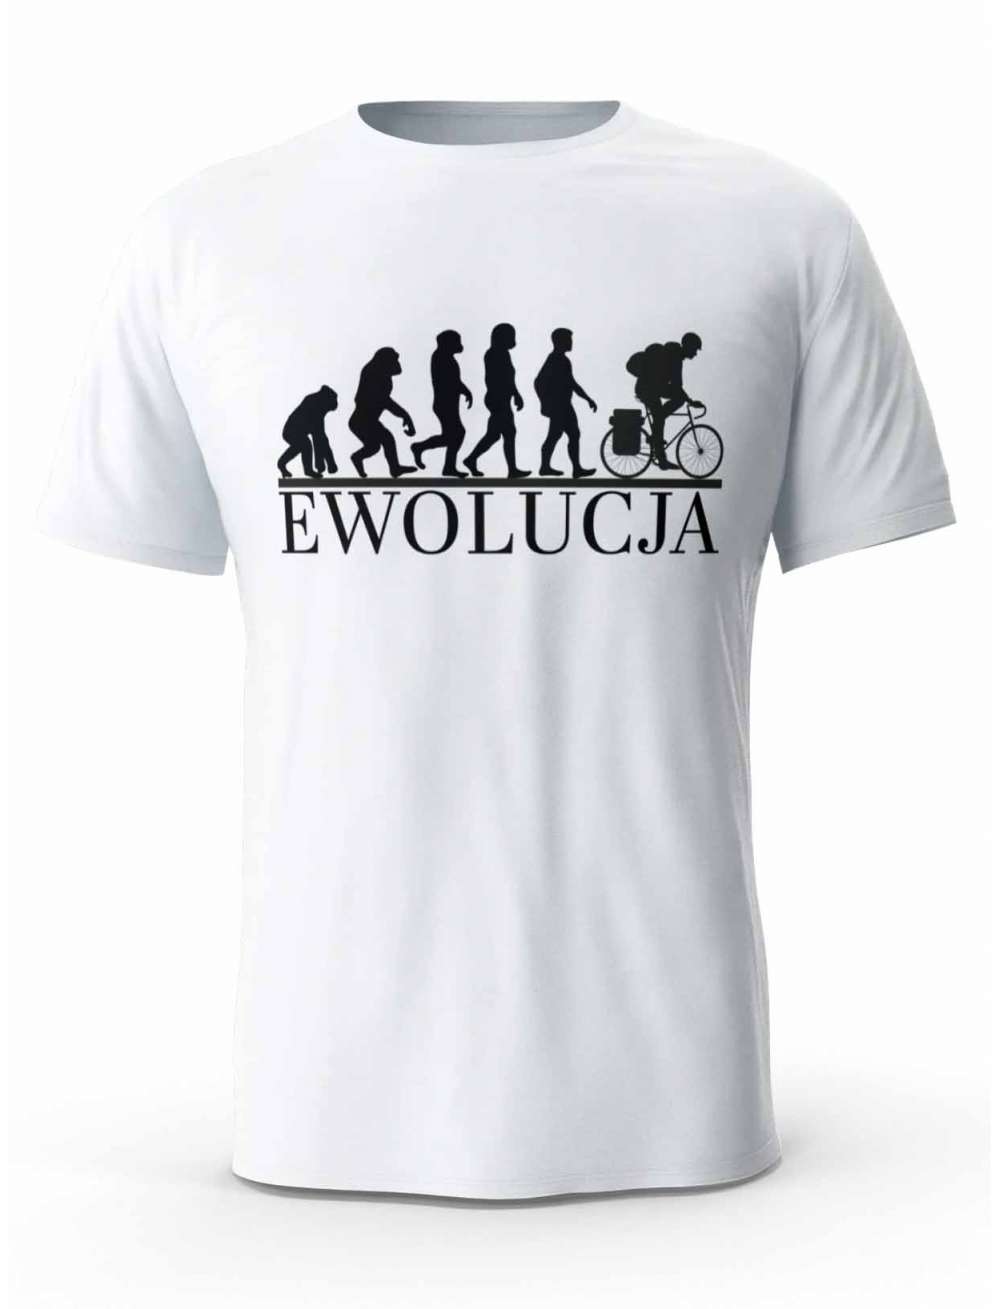 Koszulka Męska, Ewolucja Rower, T-shirt Dla Mężczyzny